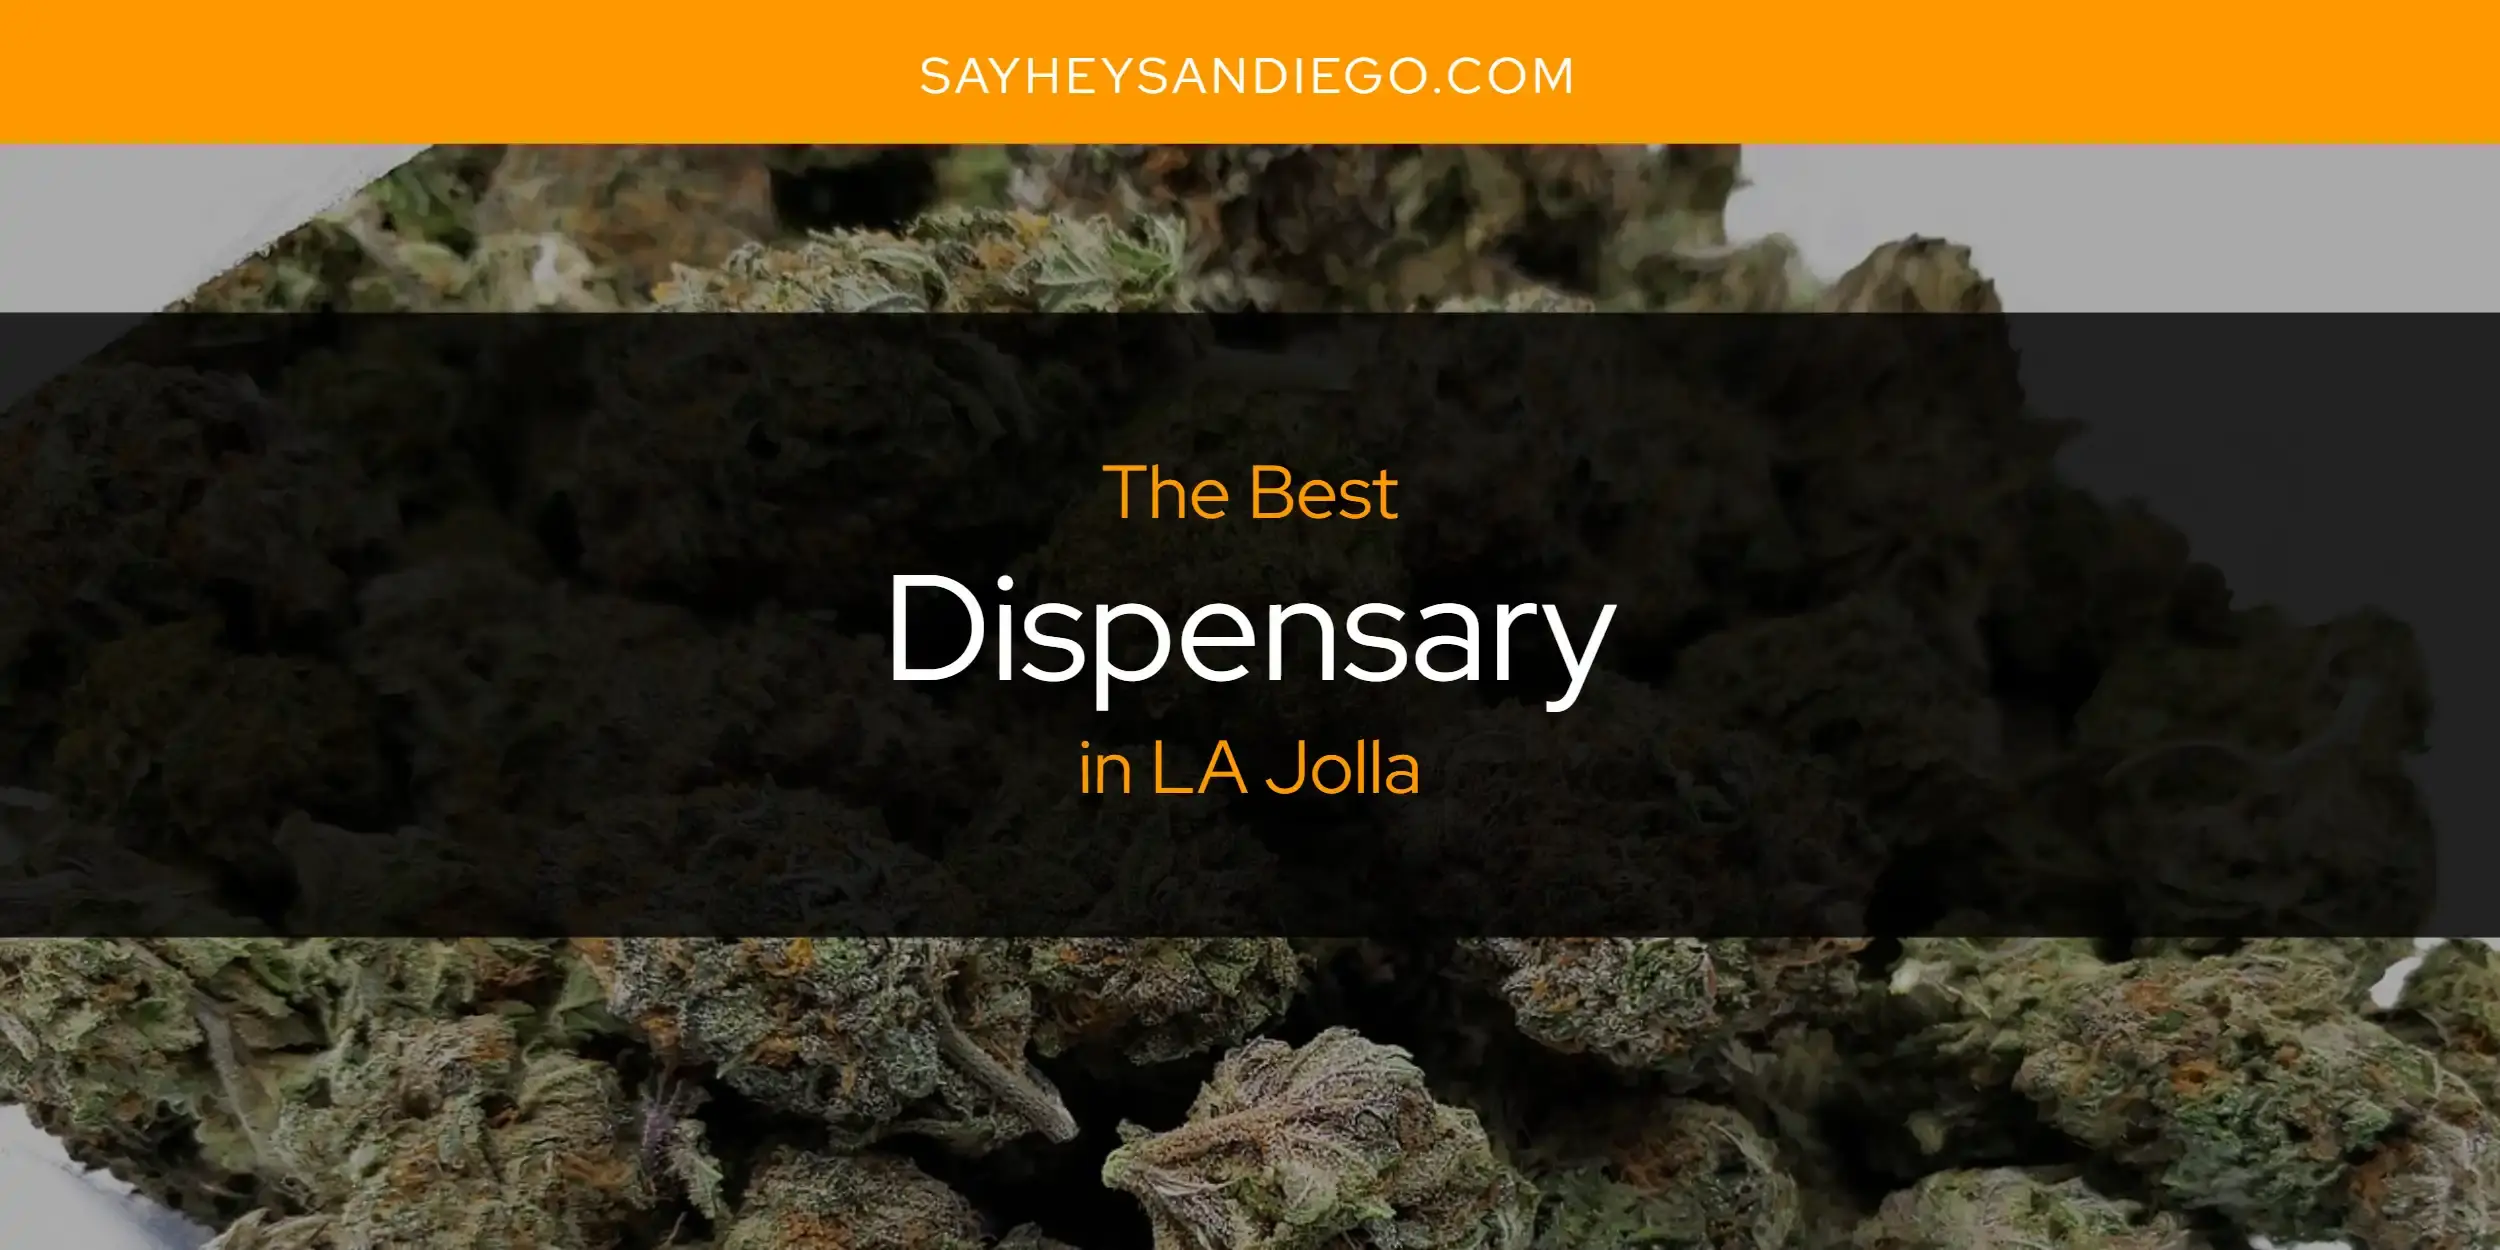 Best Dispensary in LA Jolla? Here's the Top 13